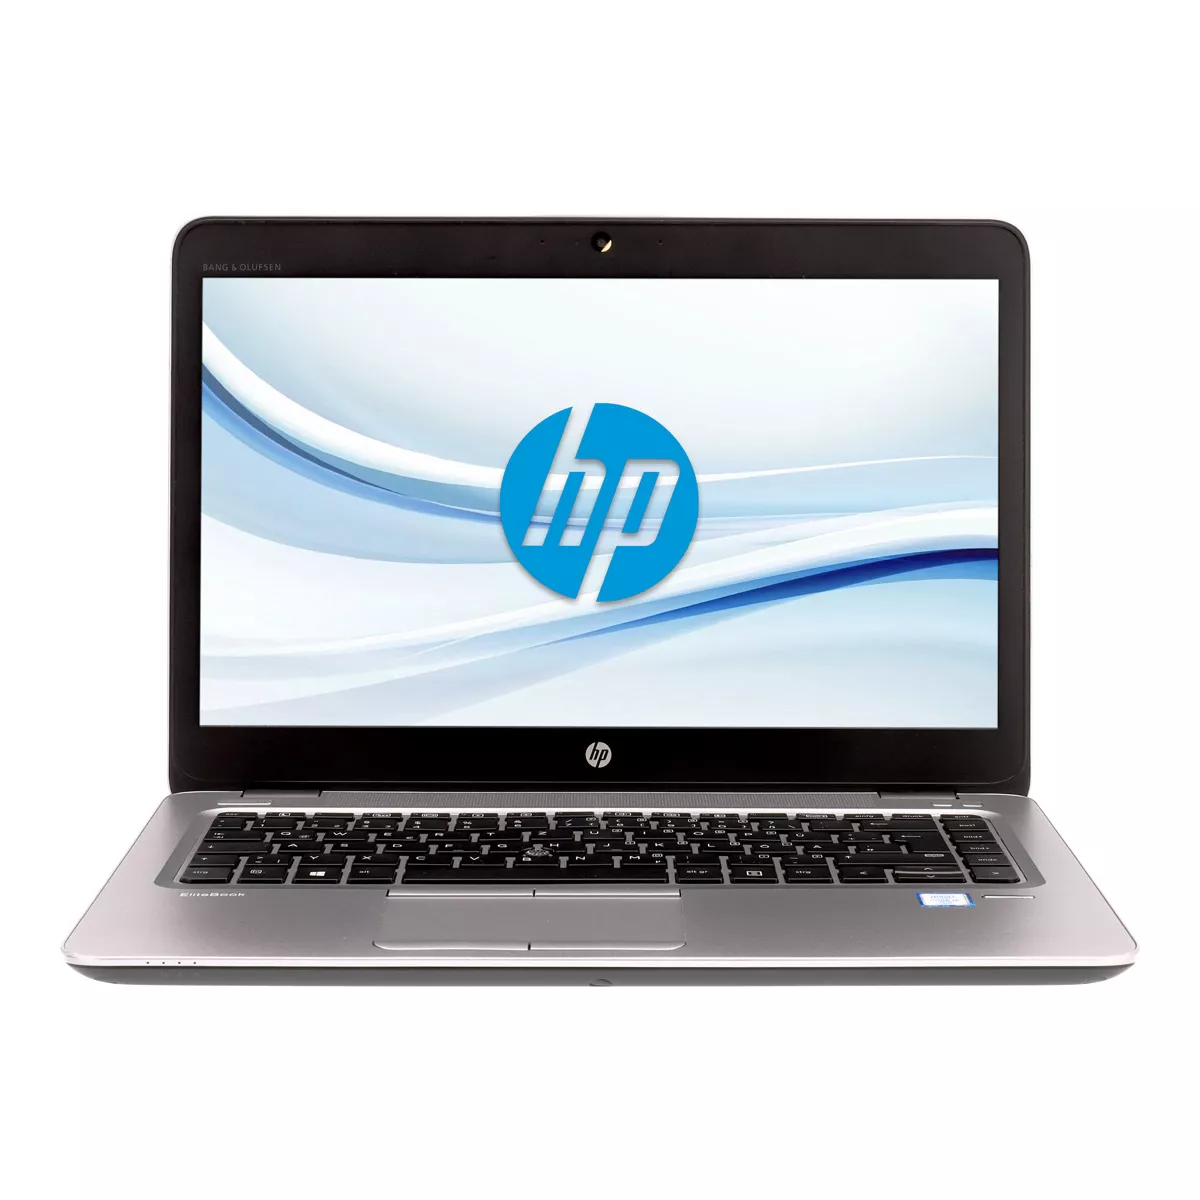 HP EliteBook 840 G3 Core i5 6300U 8 GB 240 GB A